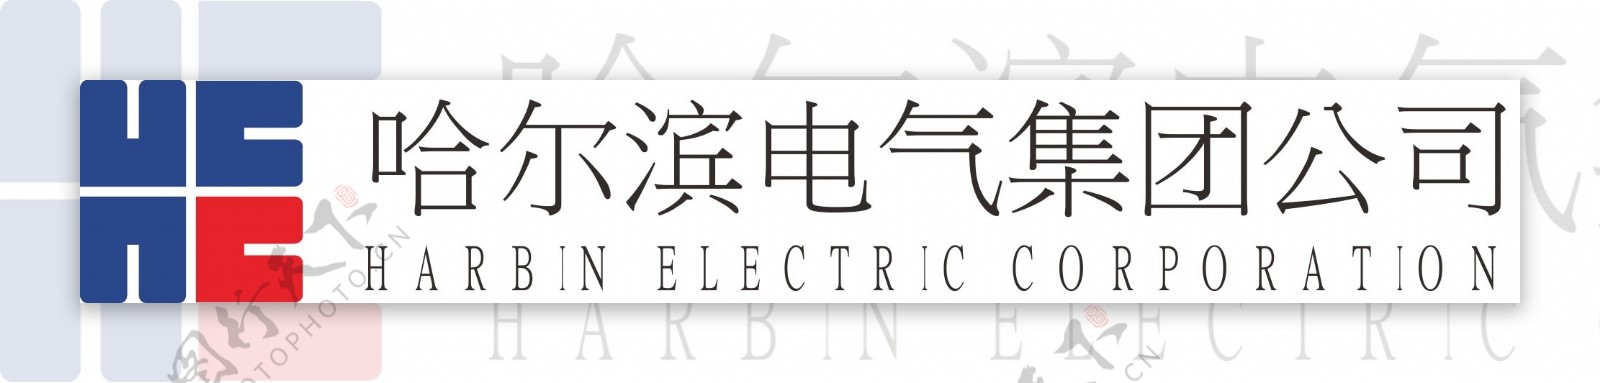 哈尔滨电气集团公司标图片